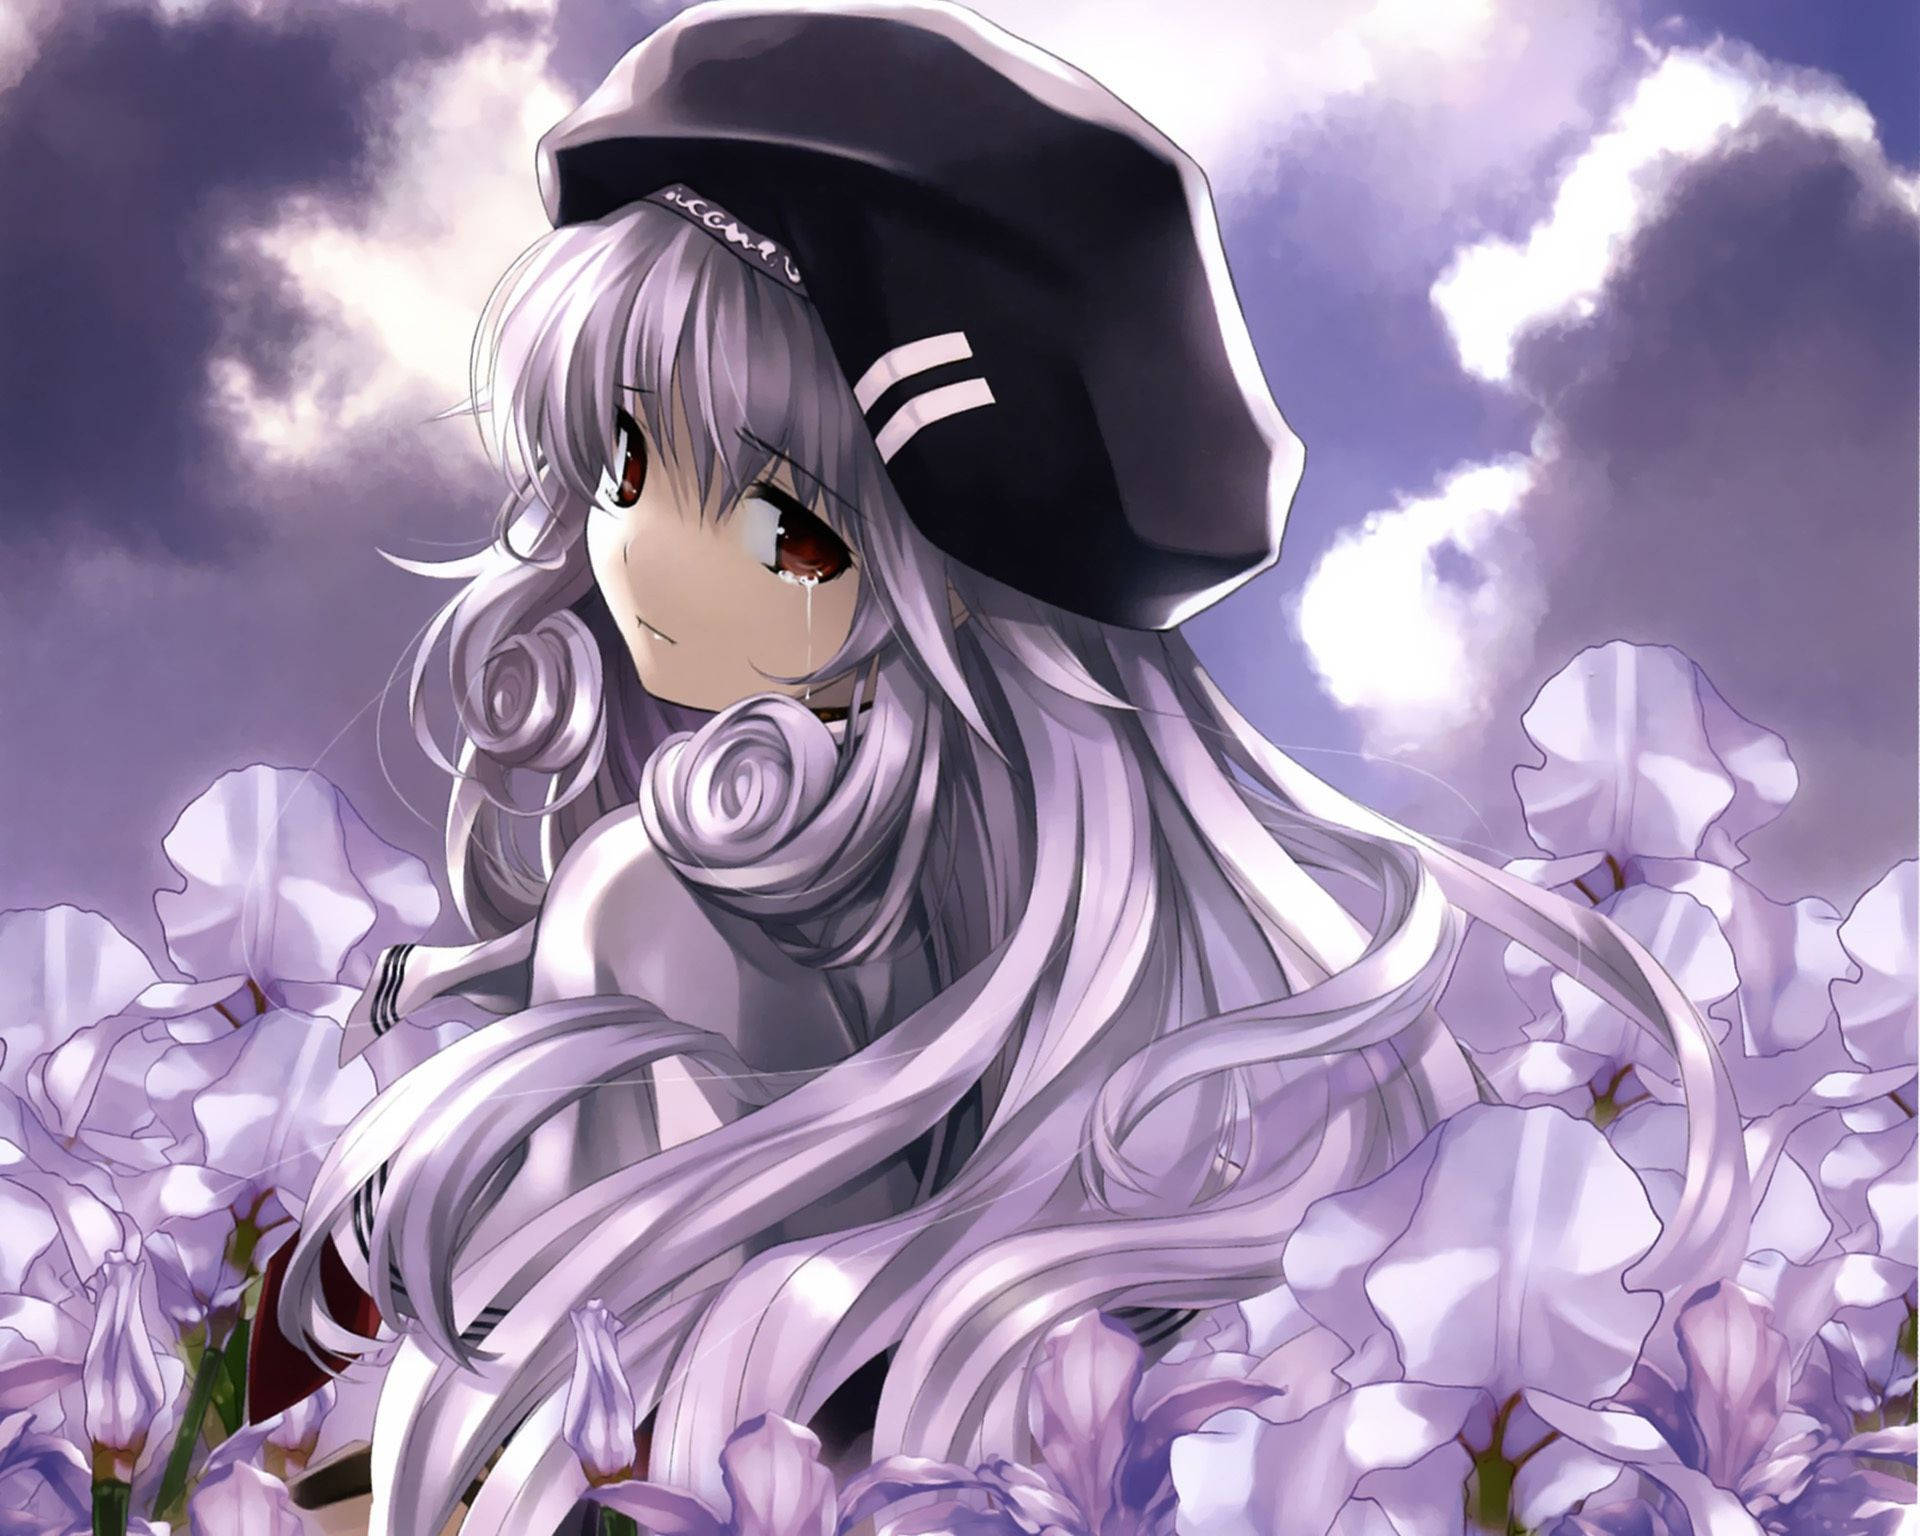 Sad Anime Girl In Flower Field Wallpaper